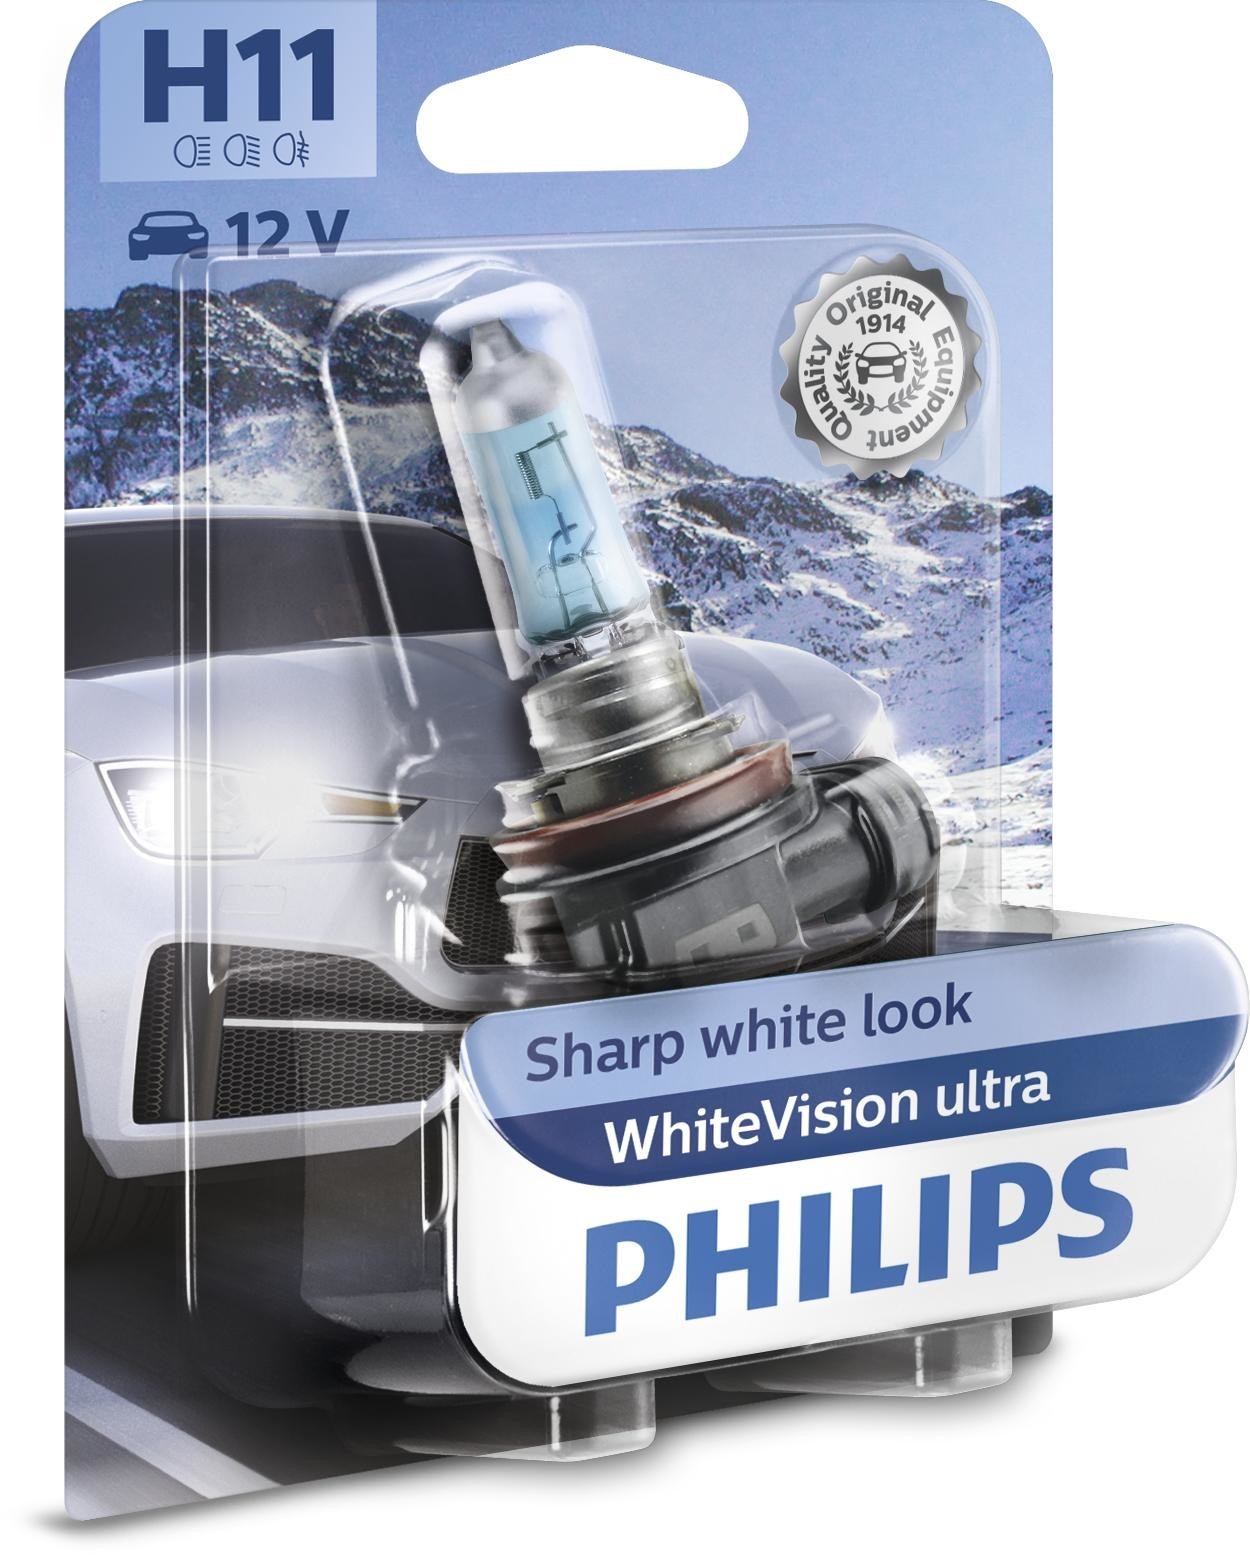 PHILIPS H11 WhiteVision ultra 12V